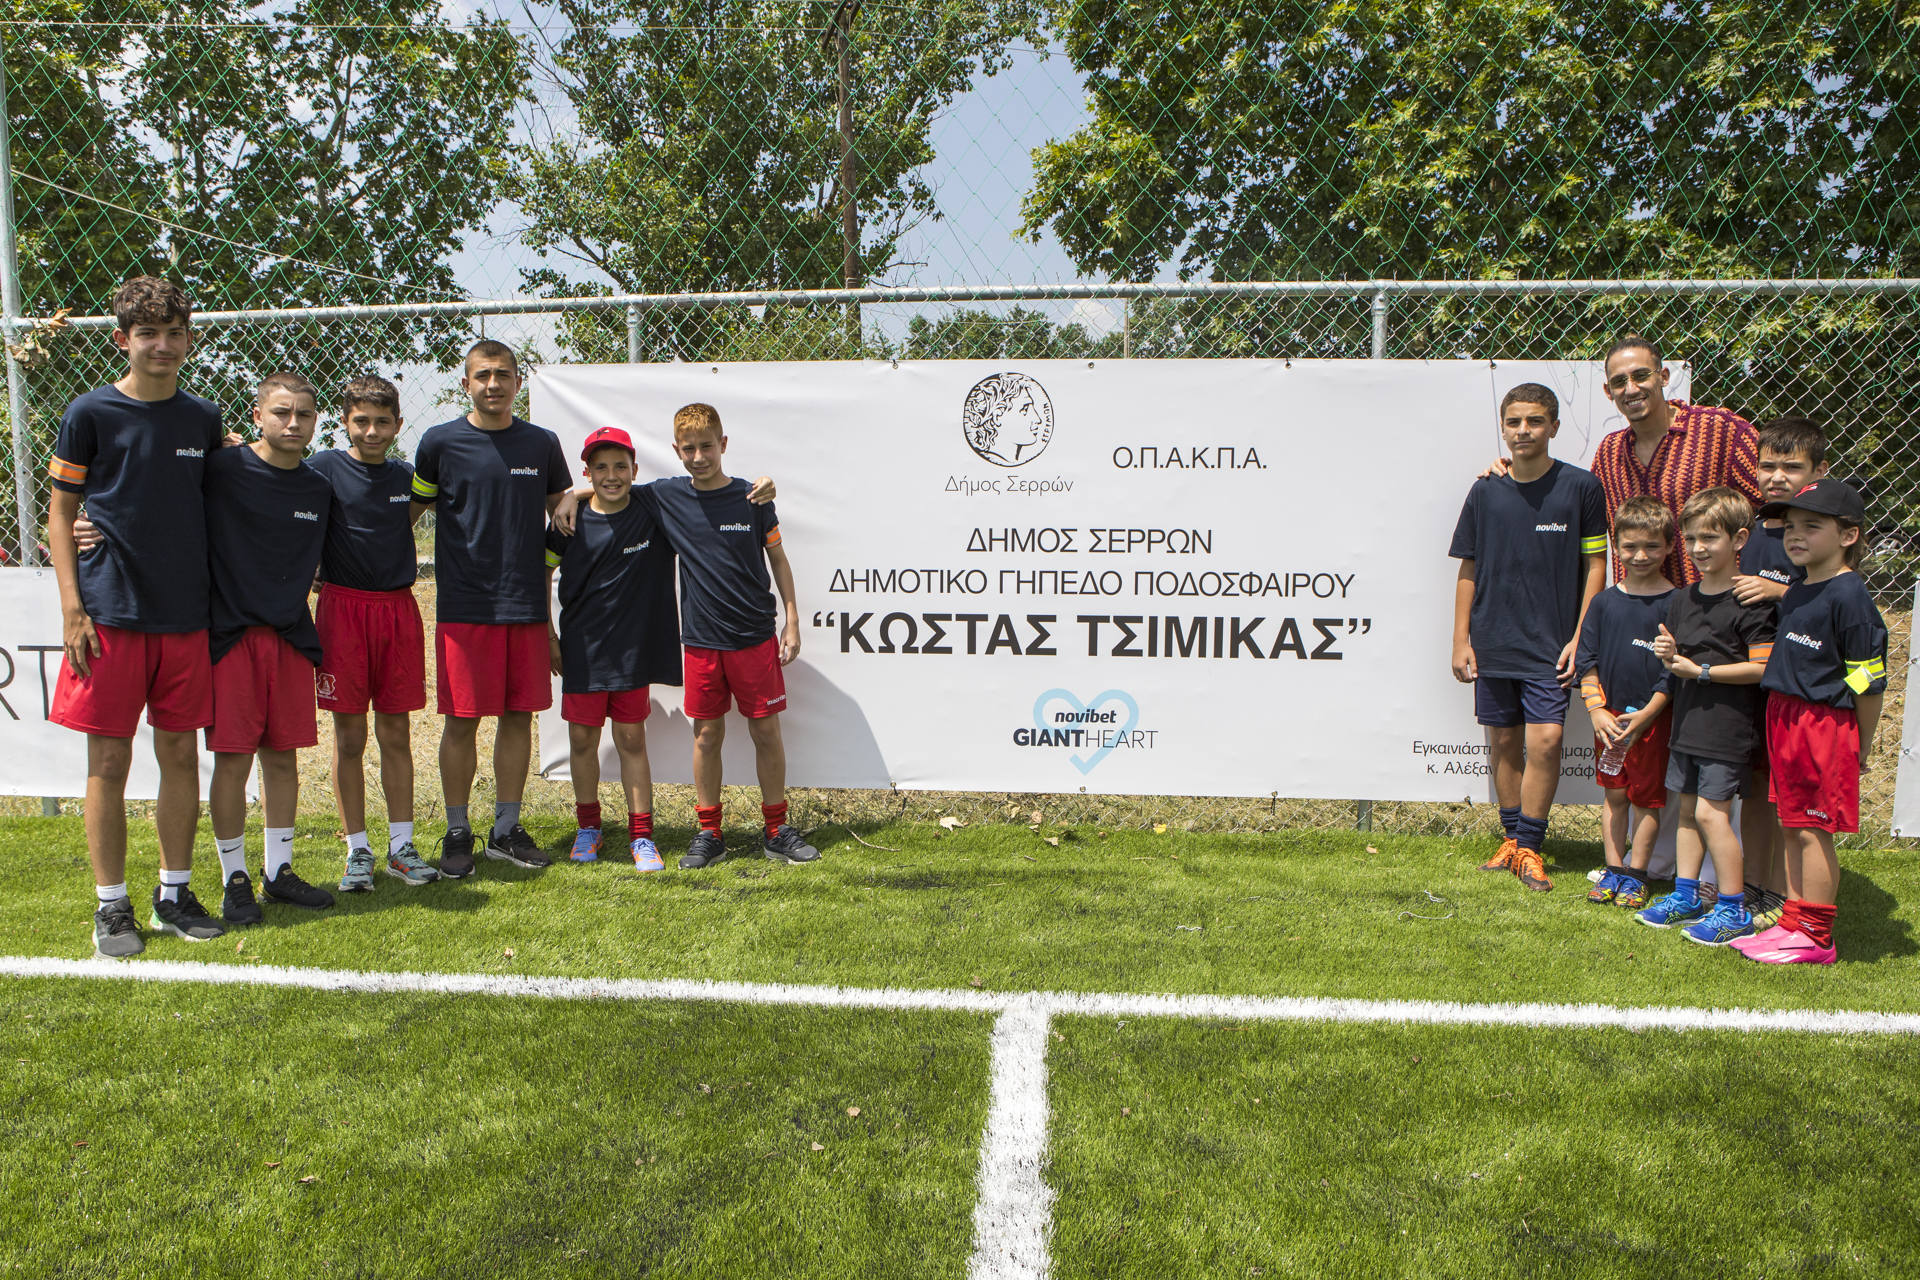 Παραδόθηκε το νέο γήπεδο ποδοσφαίρου «Κώστας Τσιμίκας» © Novibet